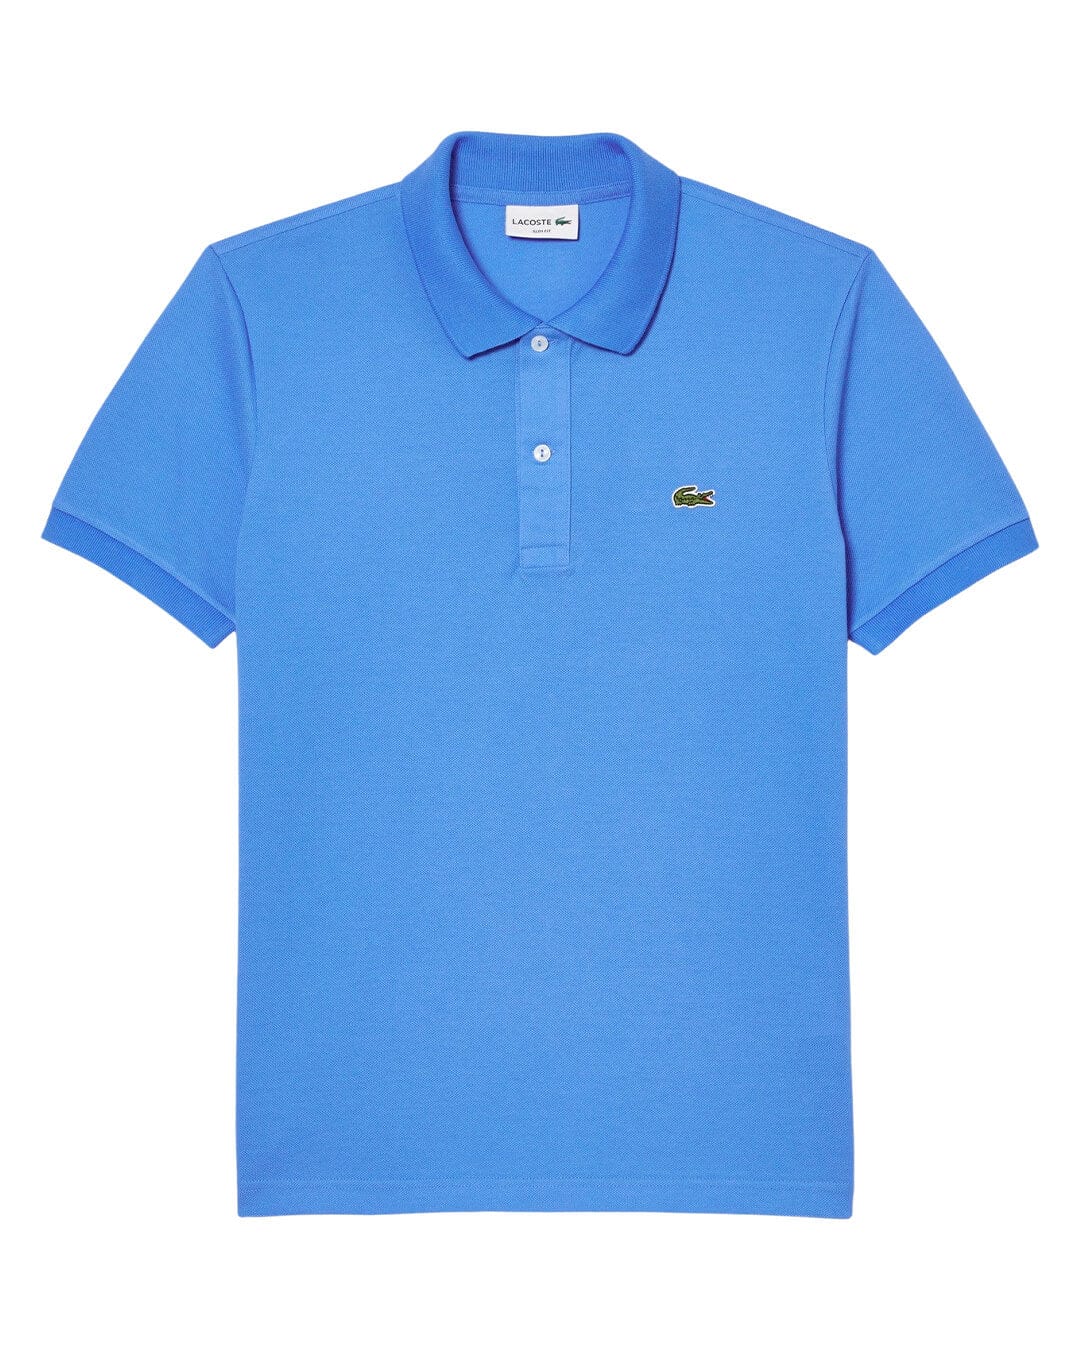 Lacoste Polo Shirts Lacoste Original L.12.12 Slim Fit Petit Piqué Cotton Blue Polo Shirt